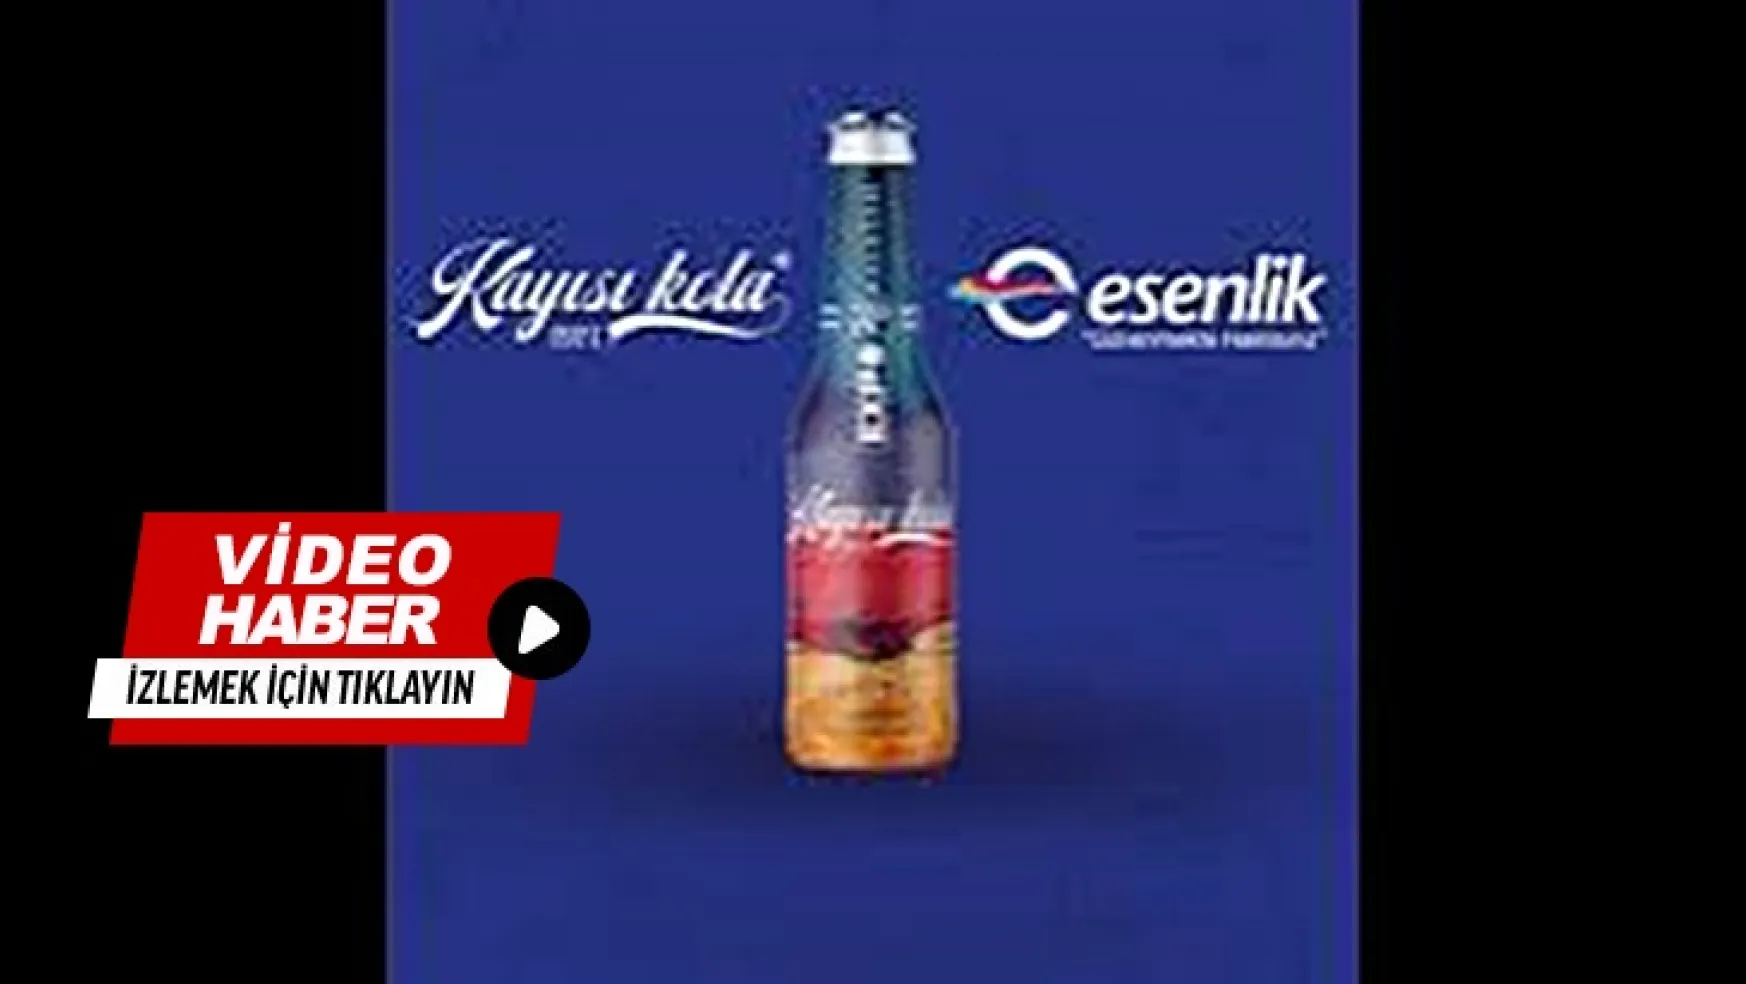 Kayısı Kola Orijinal EXPO2028 ile Esenlik Süper Marketler ve Sanal Markette satışta!